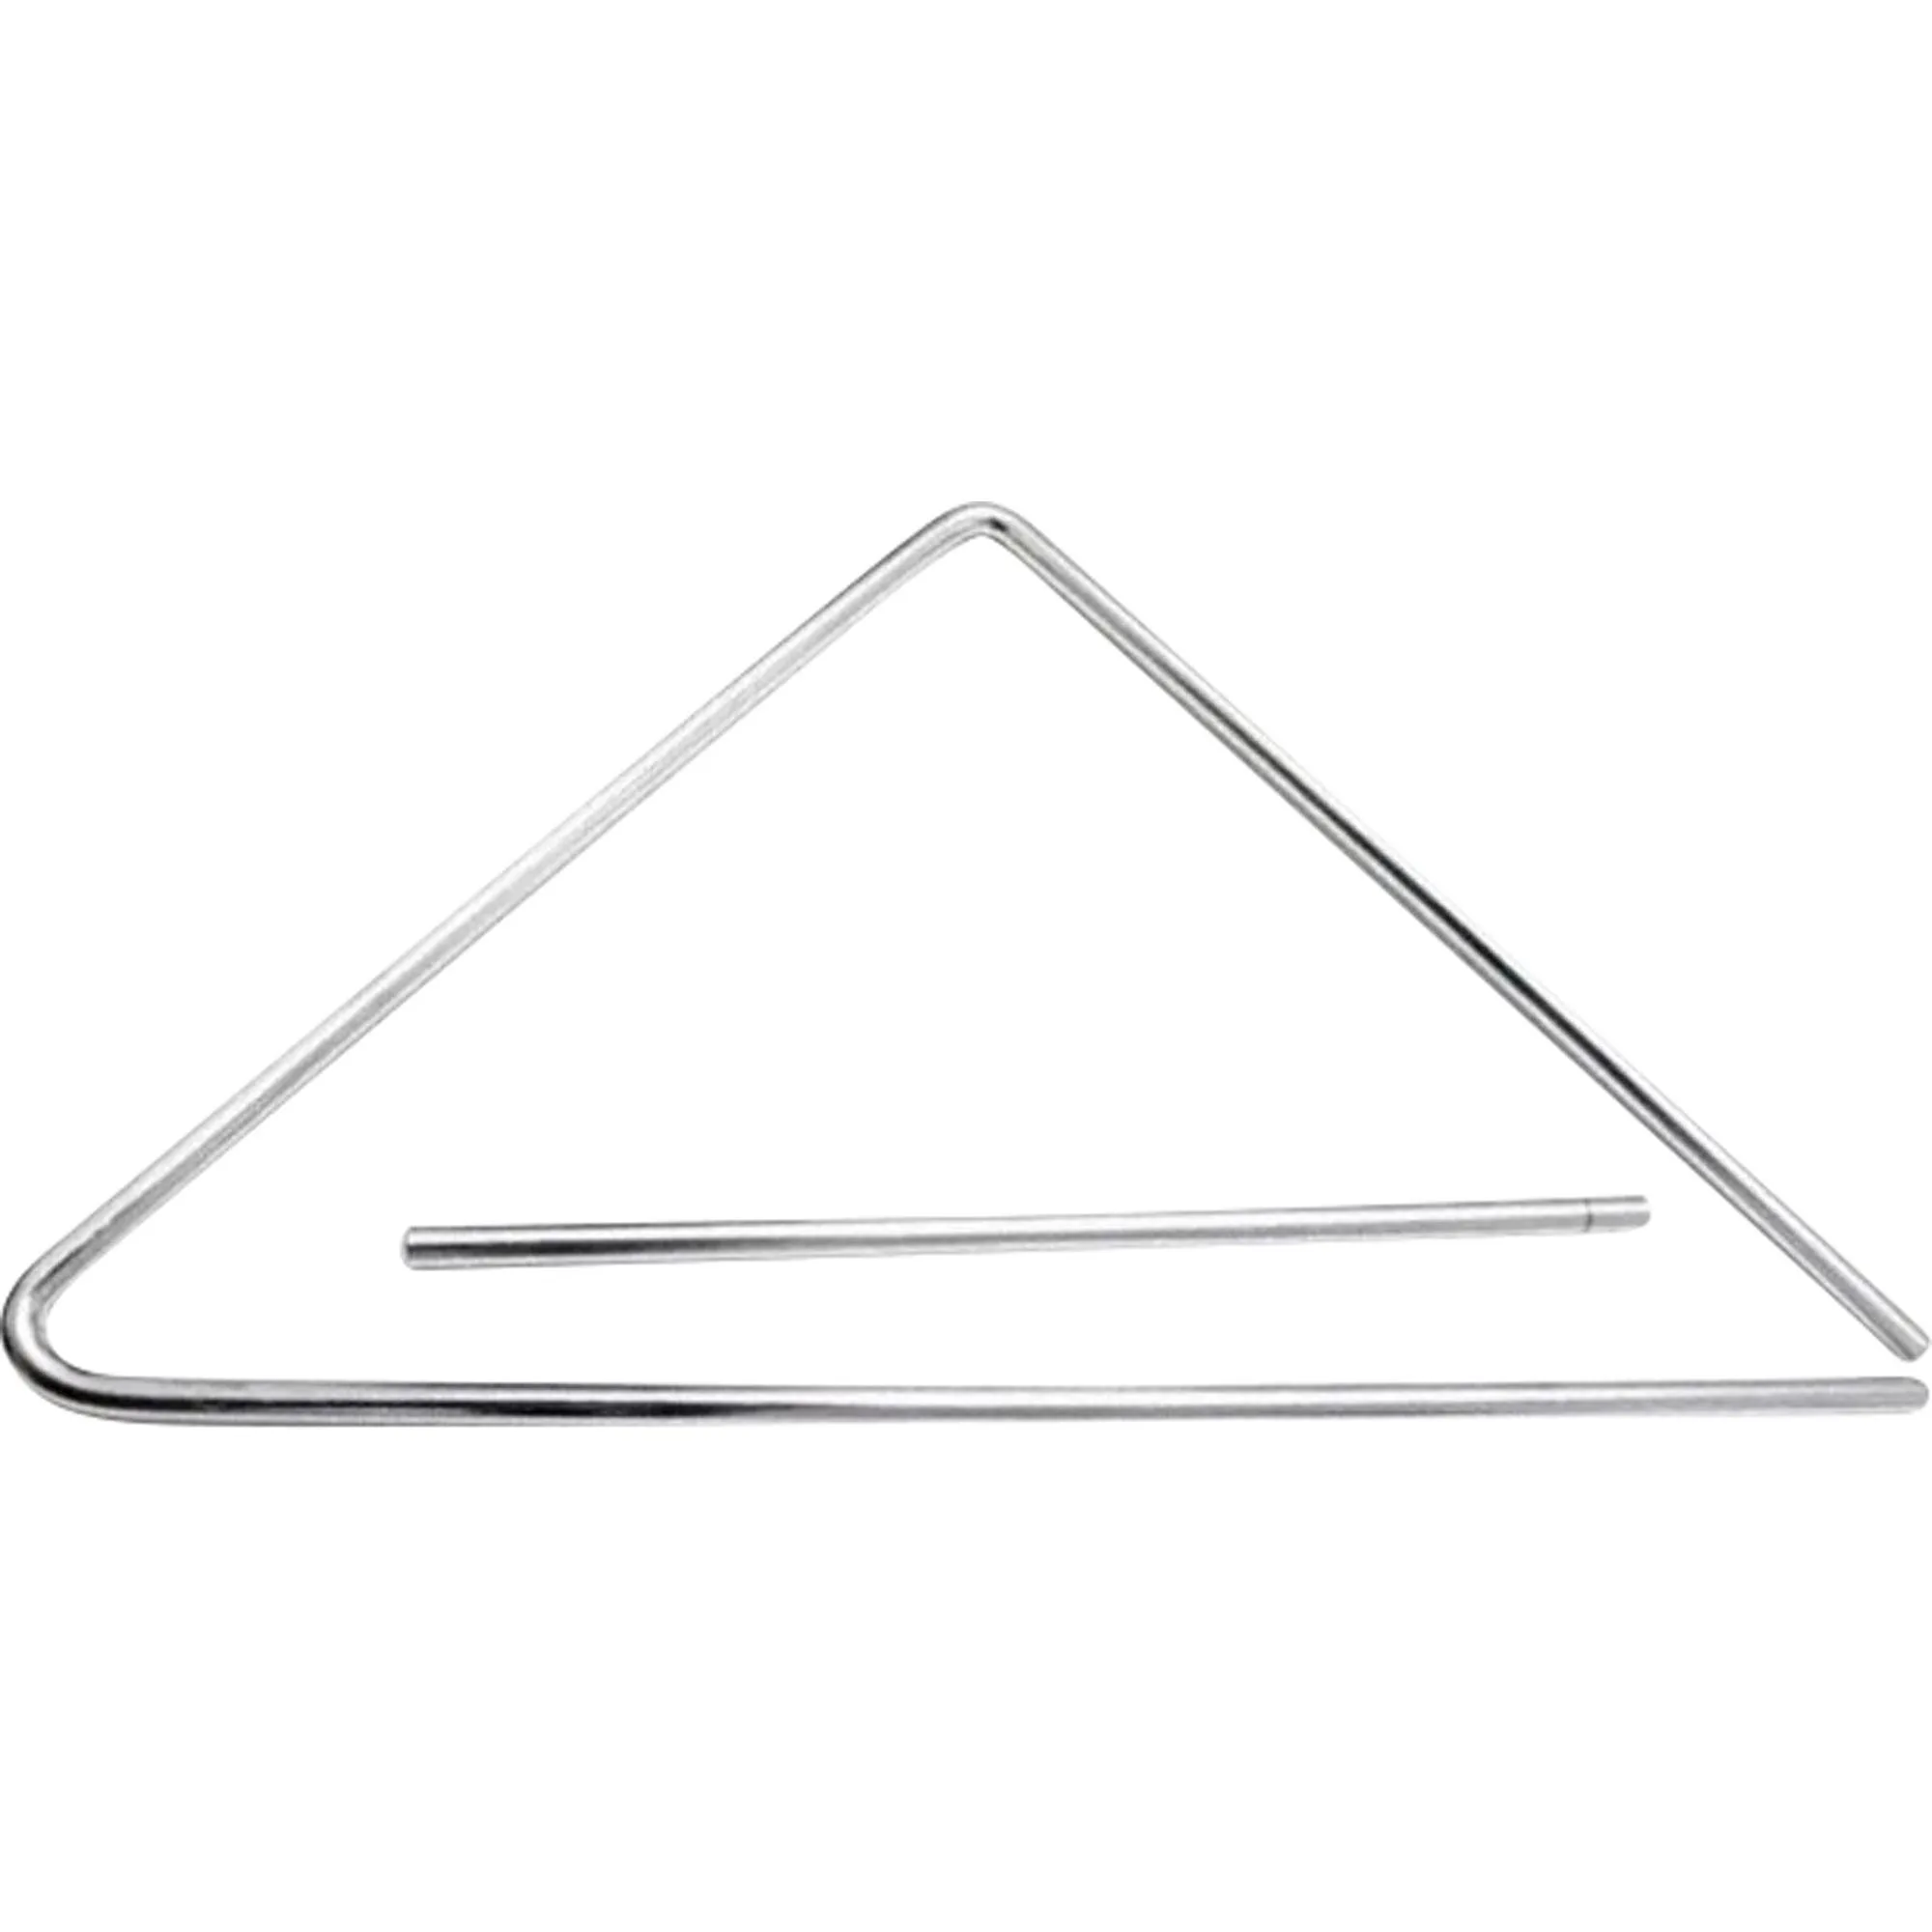 Triangulo Grande 30cm Aço Luen por 52,99 à vista no boleto/pix ou parcele em até 2x sem juros. Compre na loja Mundomax!